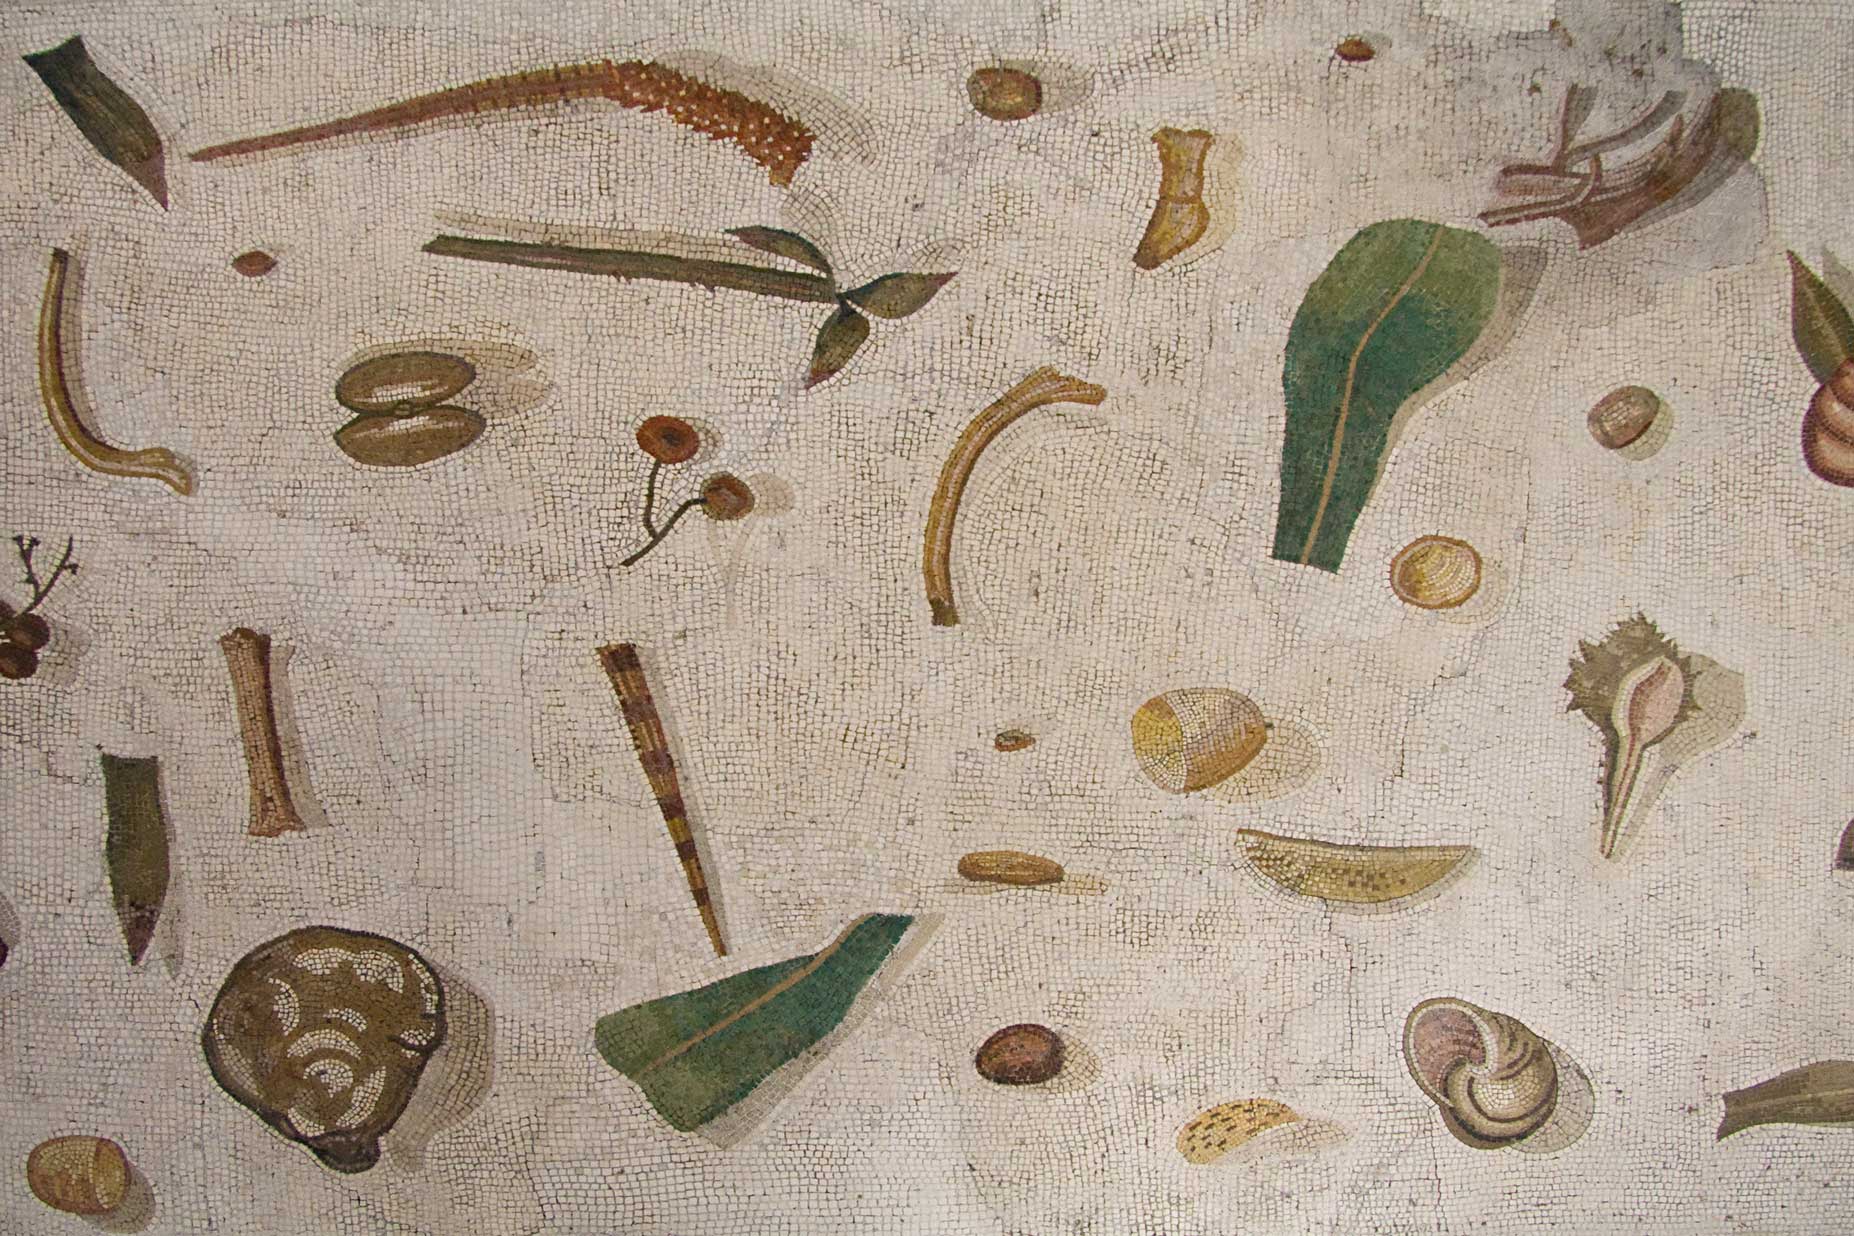 Vloermozaiek van Romeinse eetkamer met etensresten. Vaticaanse Musea